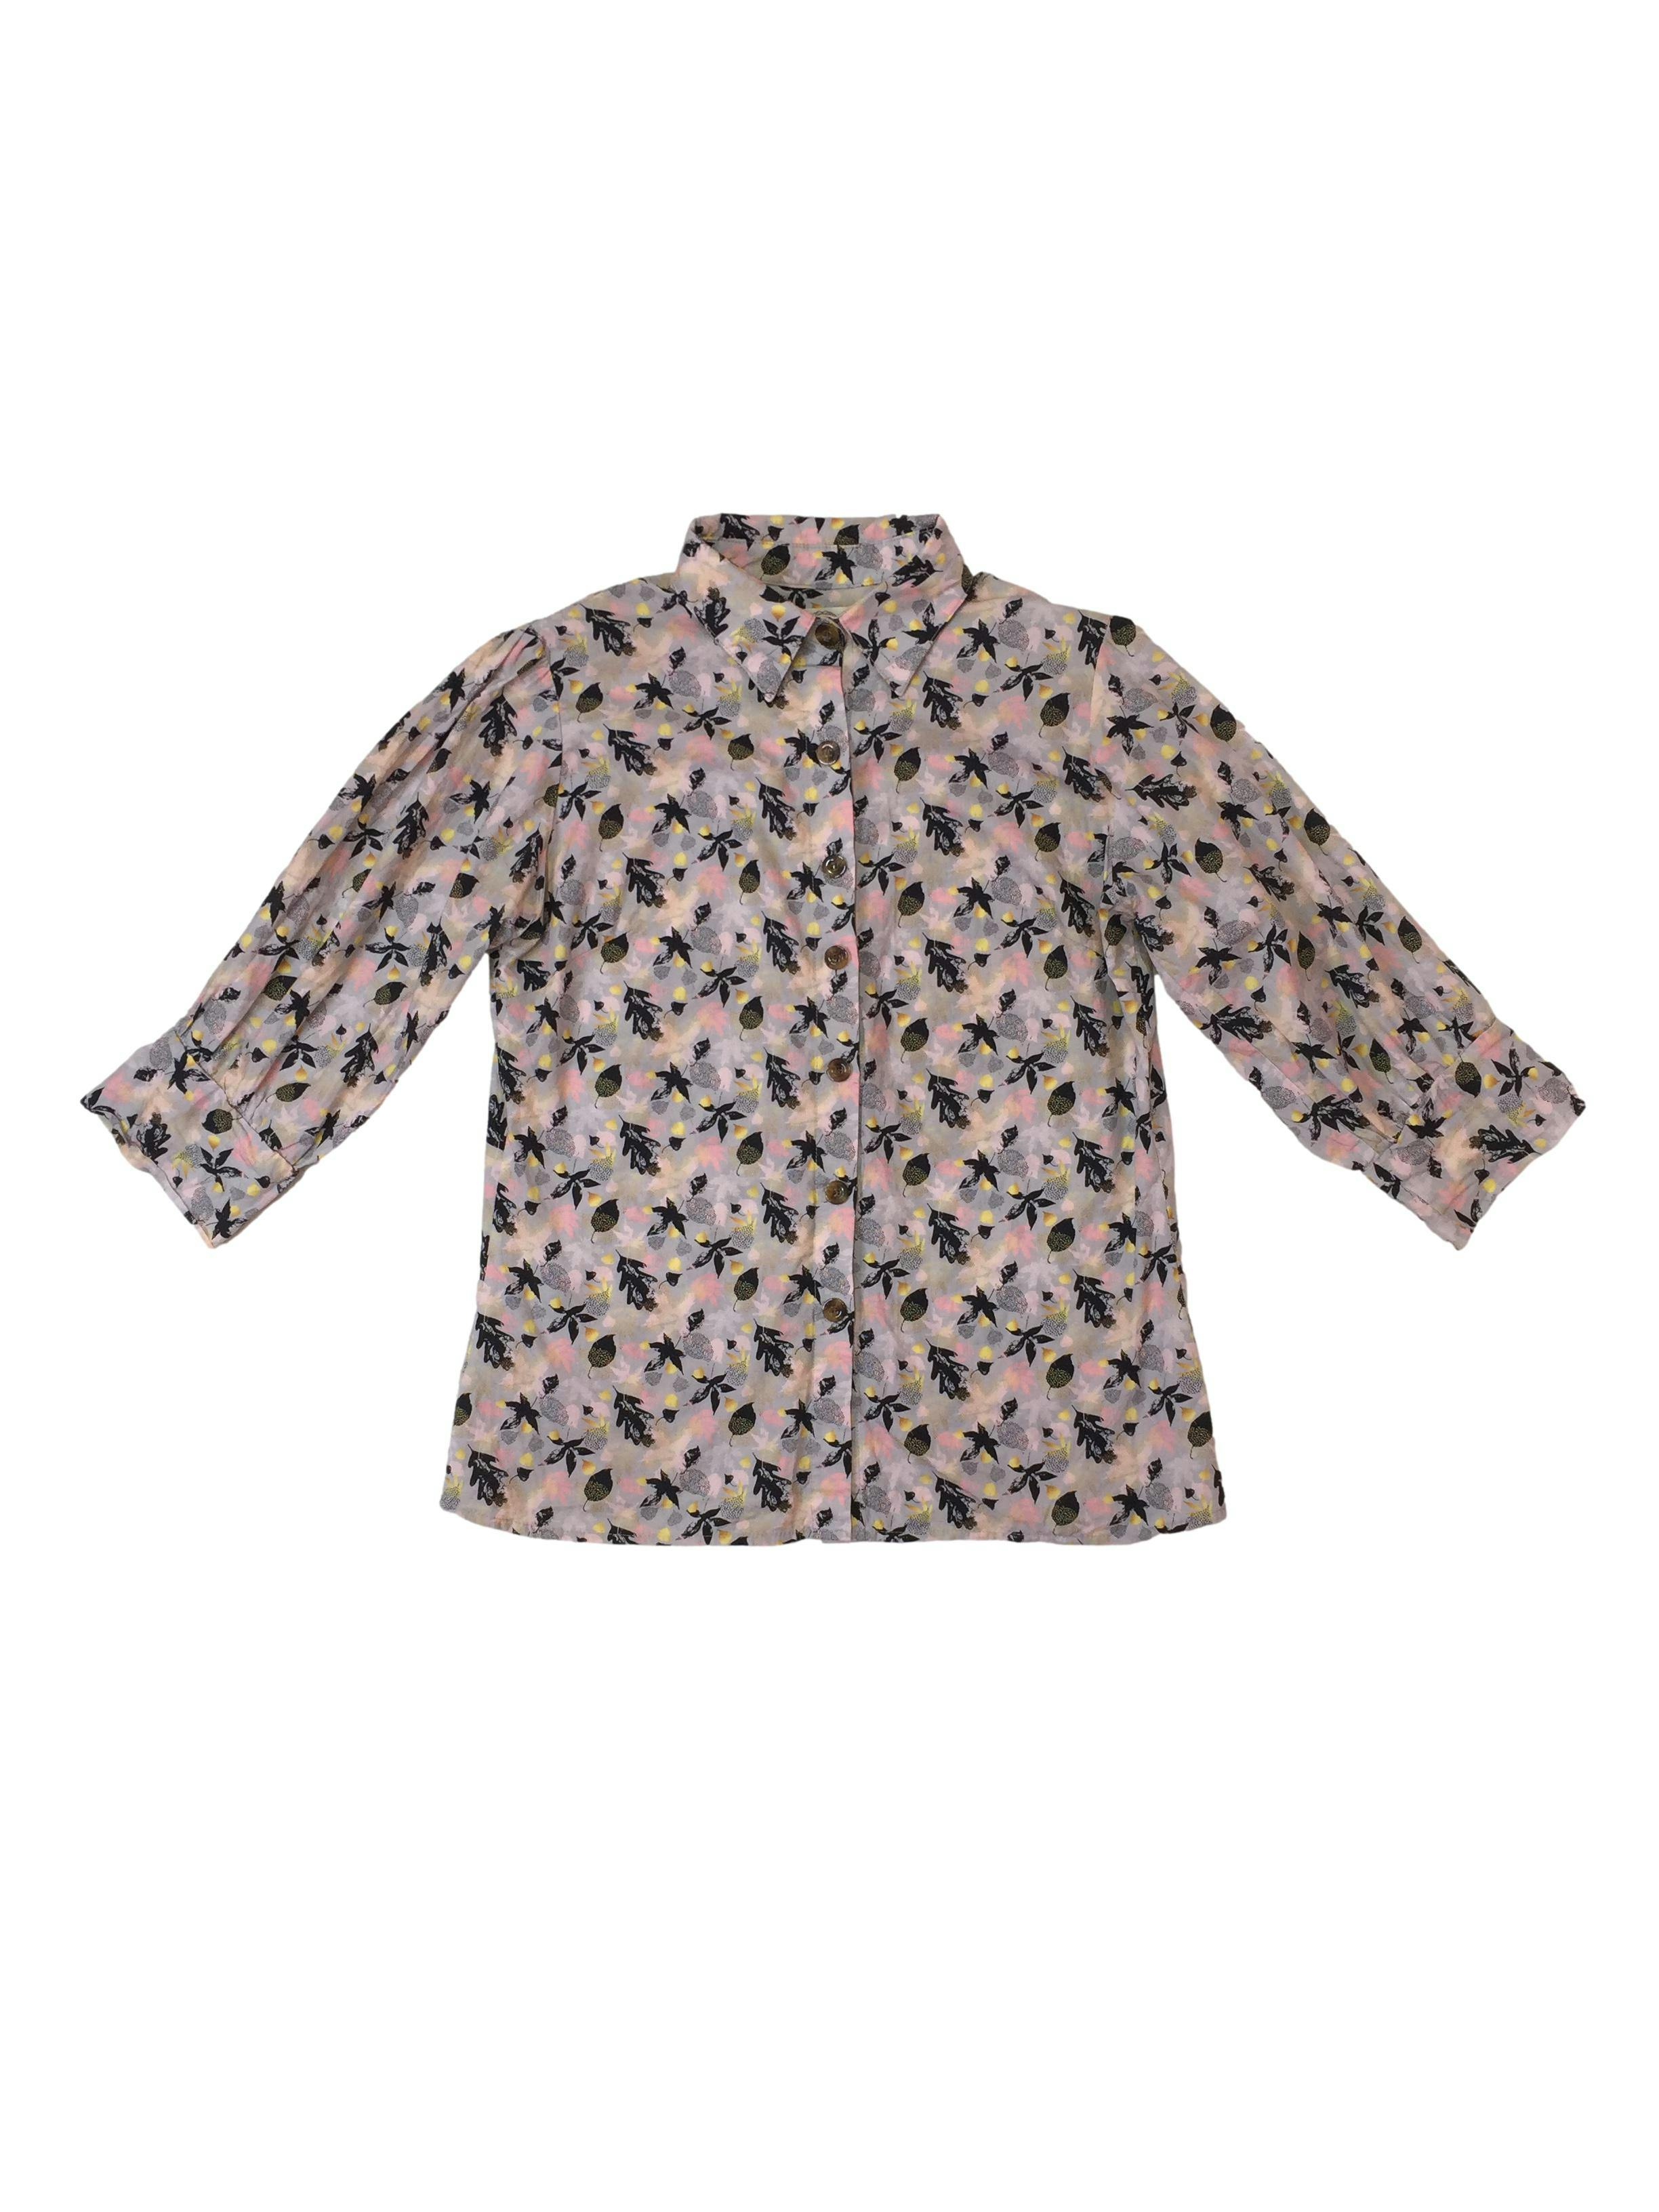 Blusa KFM gris con hojas negras, amarillas y rosadas, cuello camisero, botones delanteros y manga 3/4 Busto 104 cm Largo 59 cm 